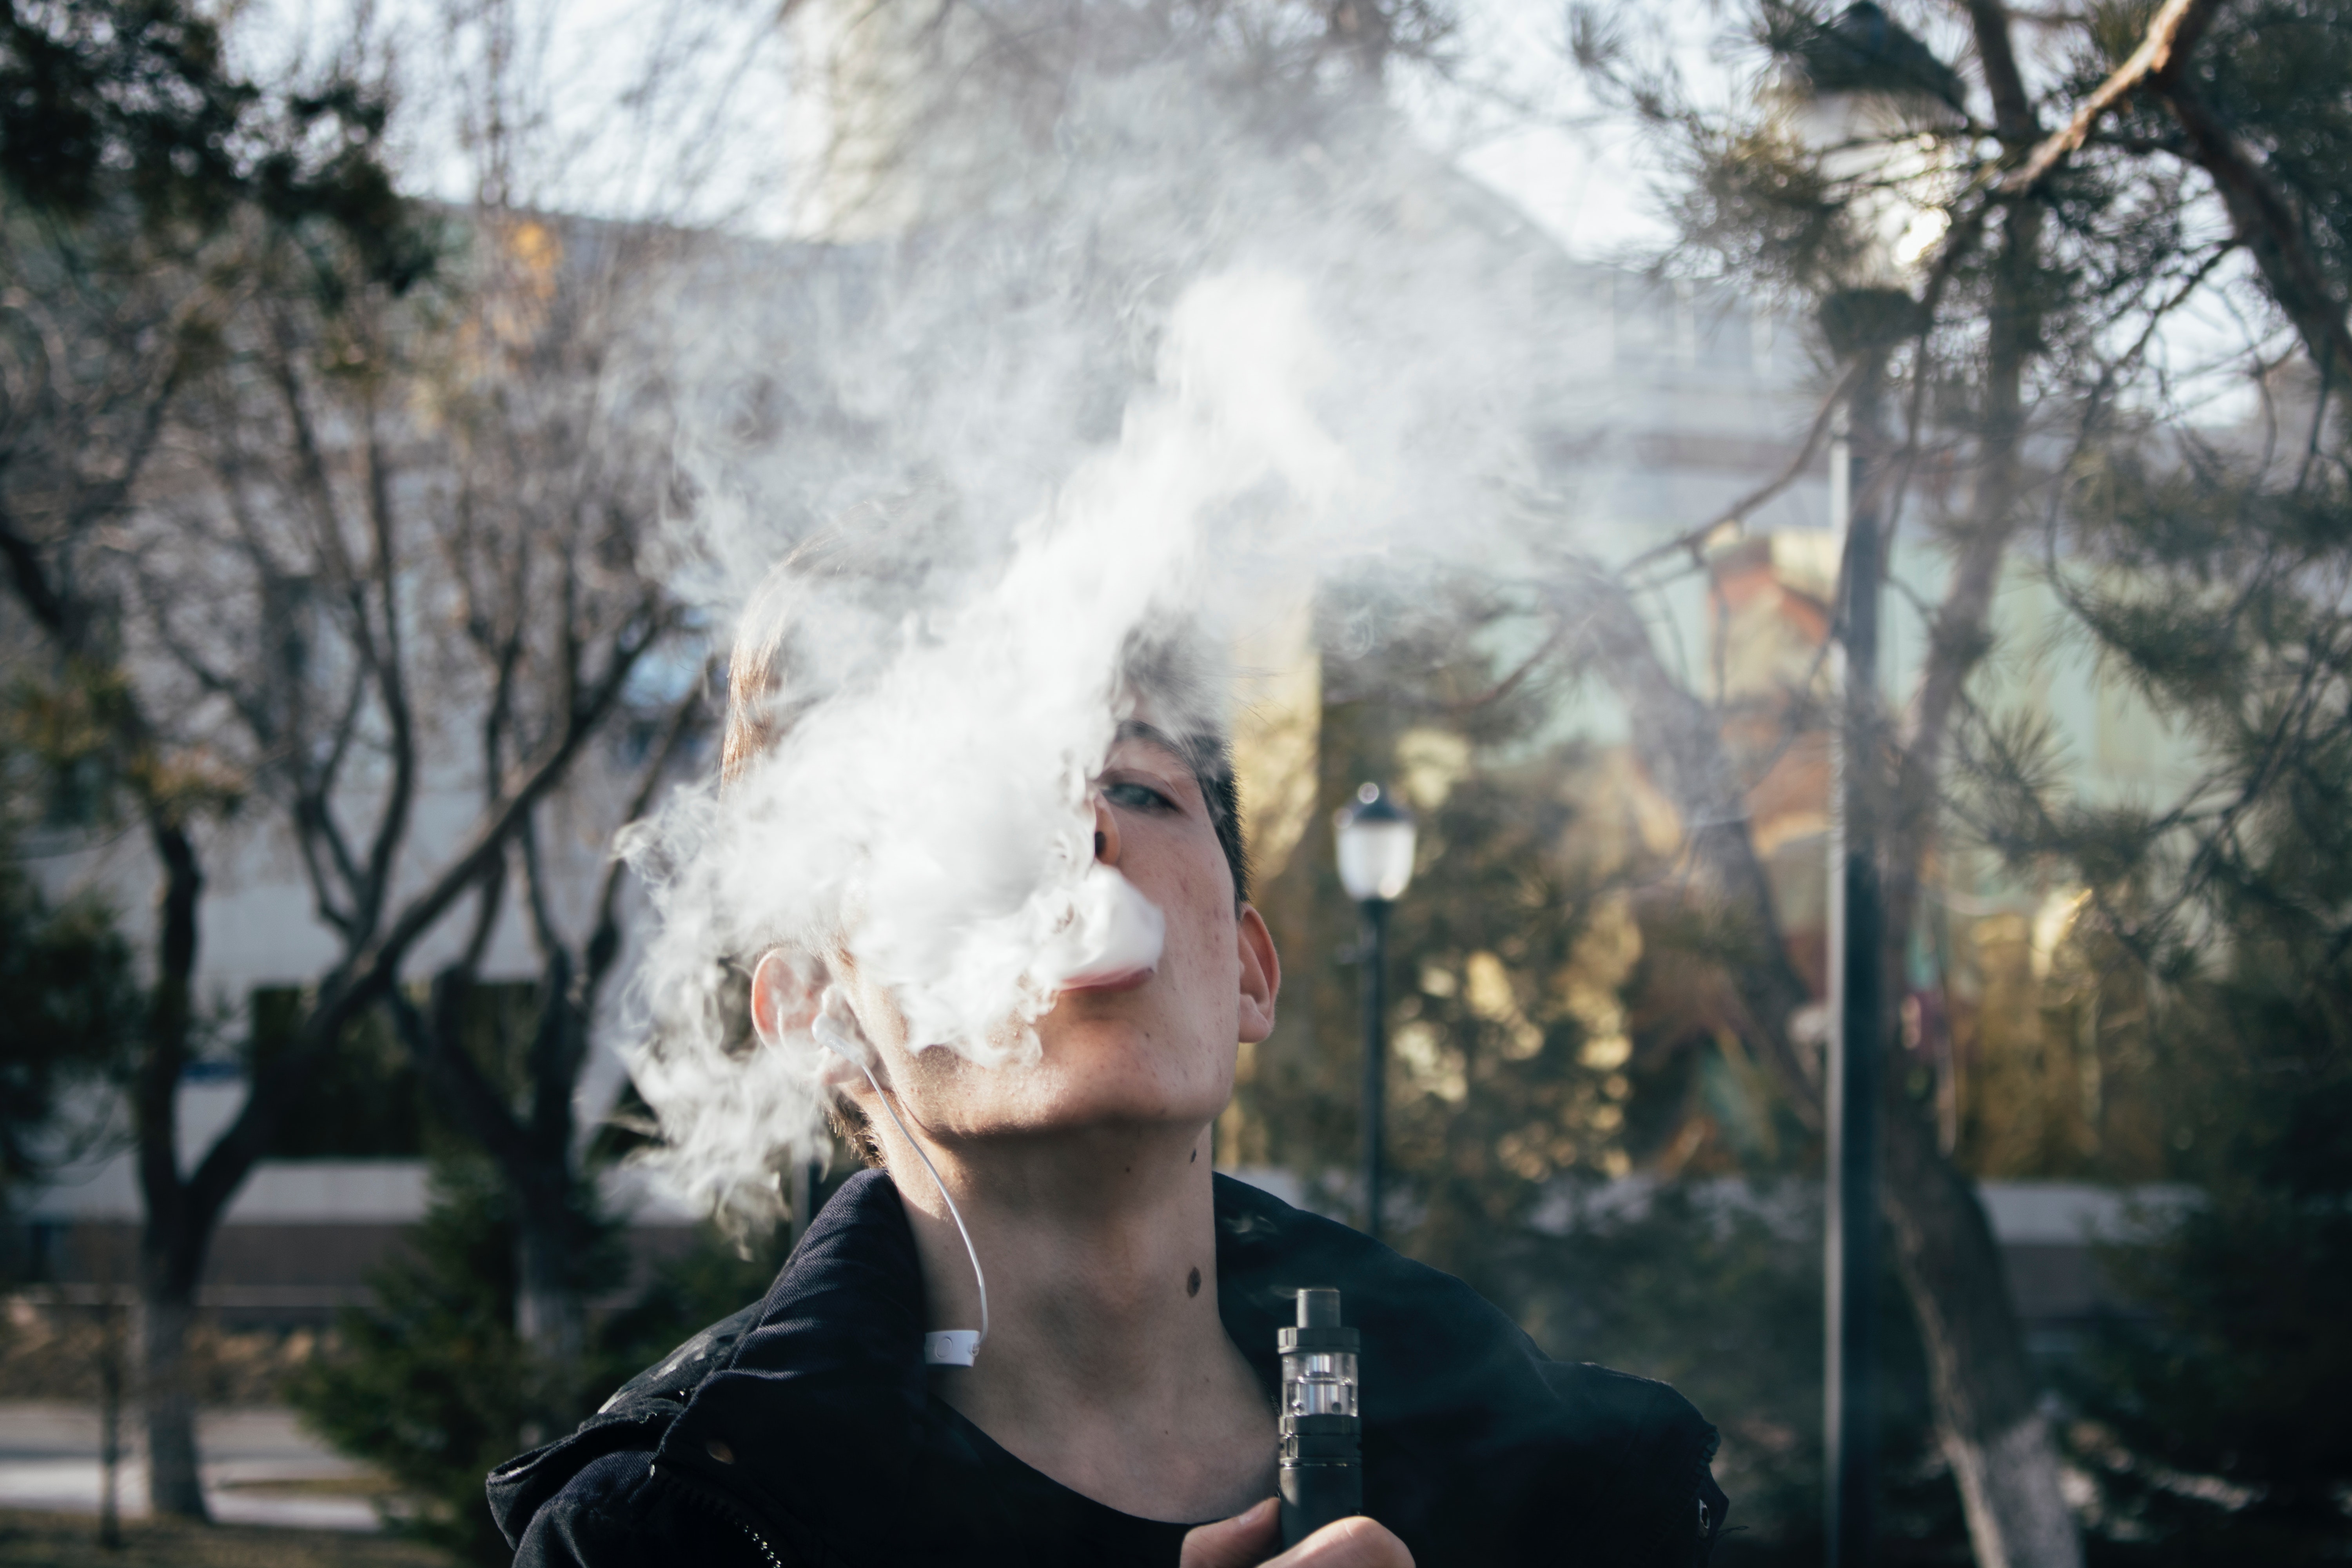 Will The FDA Ever Crack-Down On E-Cigarettes?